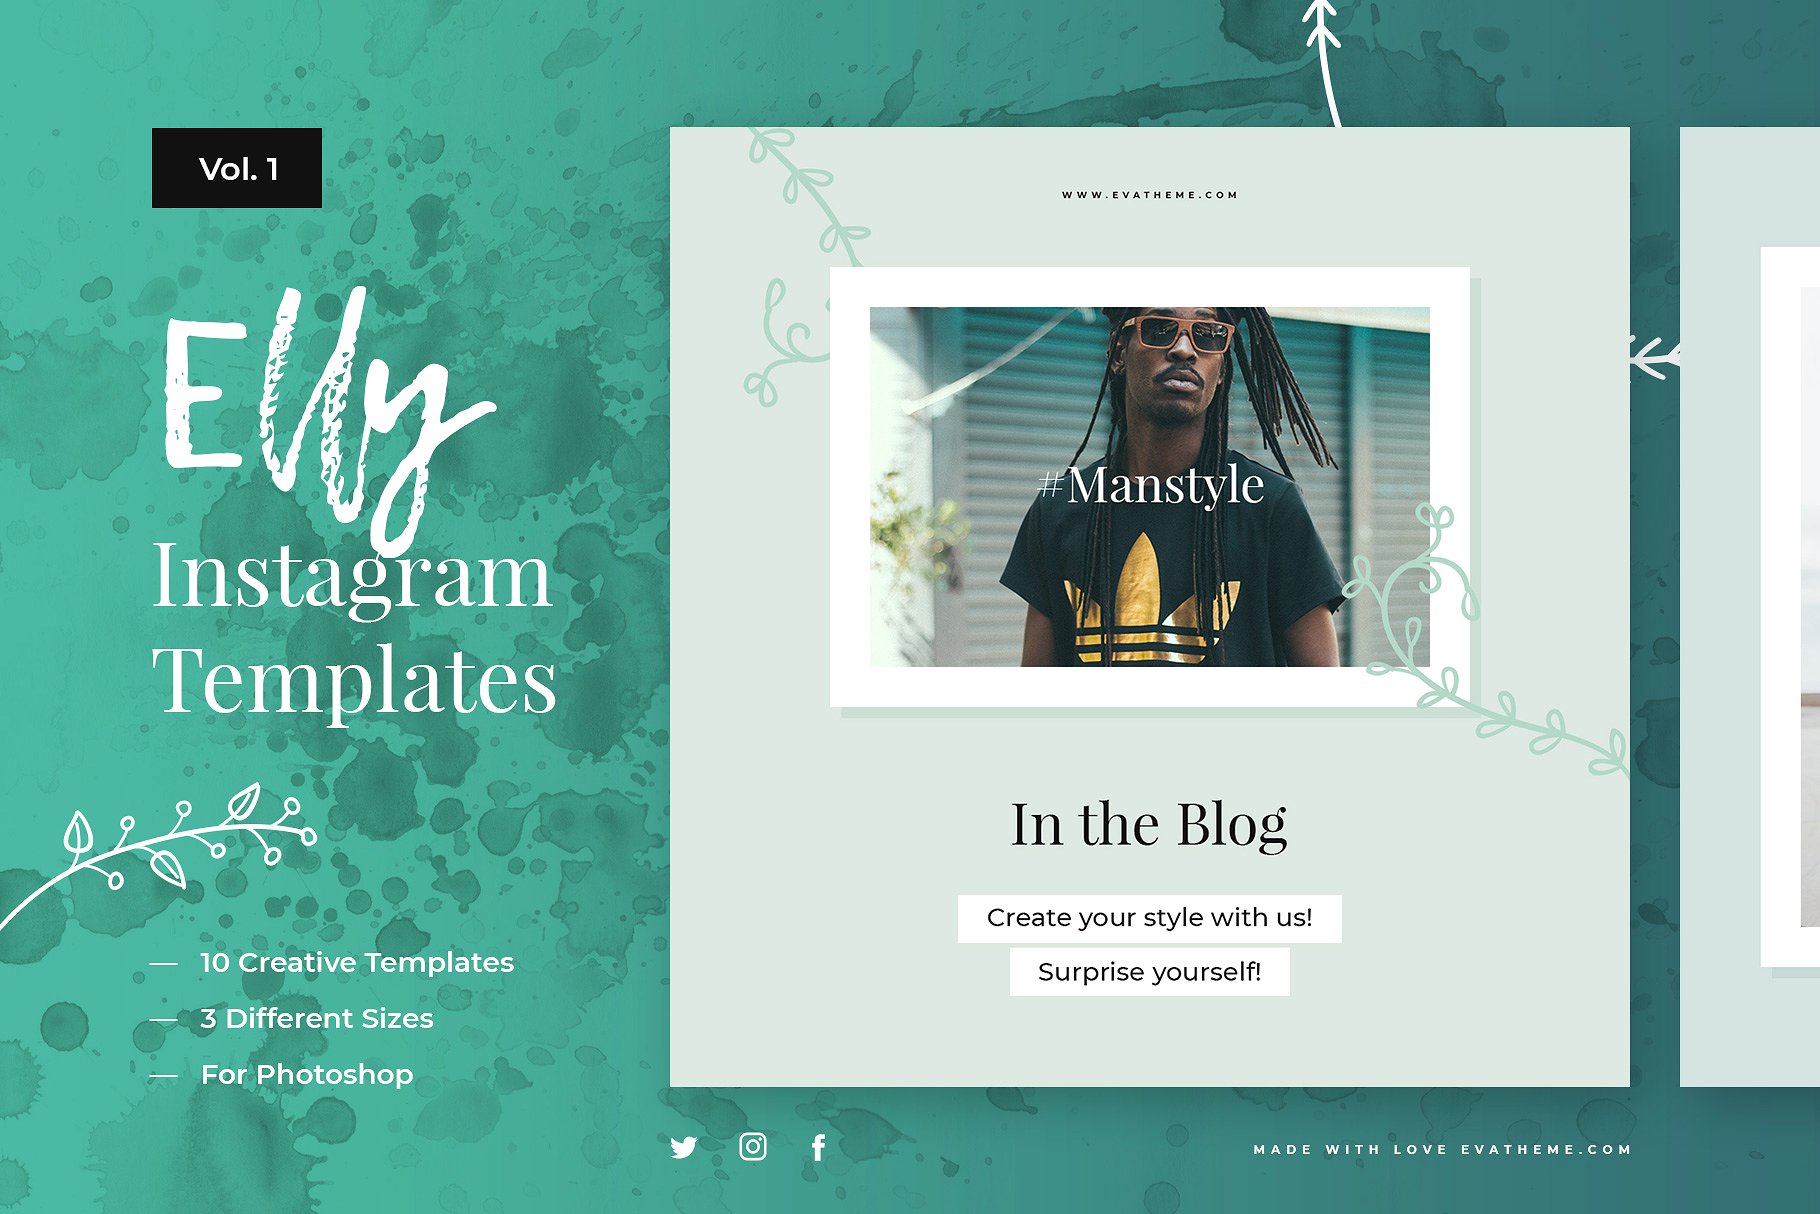 创意社交媒体贴图模板第一素材精选合集 Elly Instagram Template Bundle插图(1)